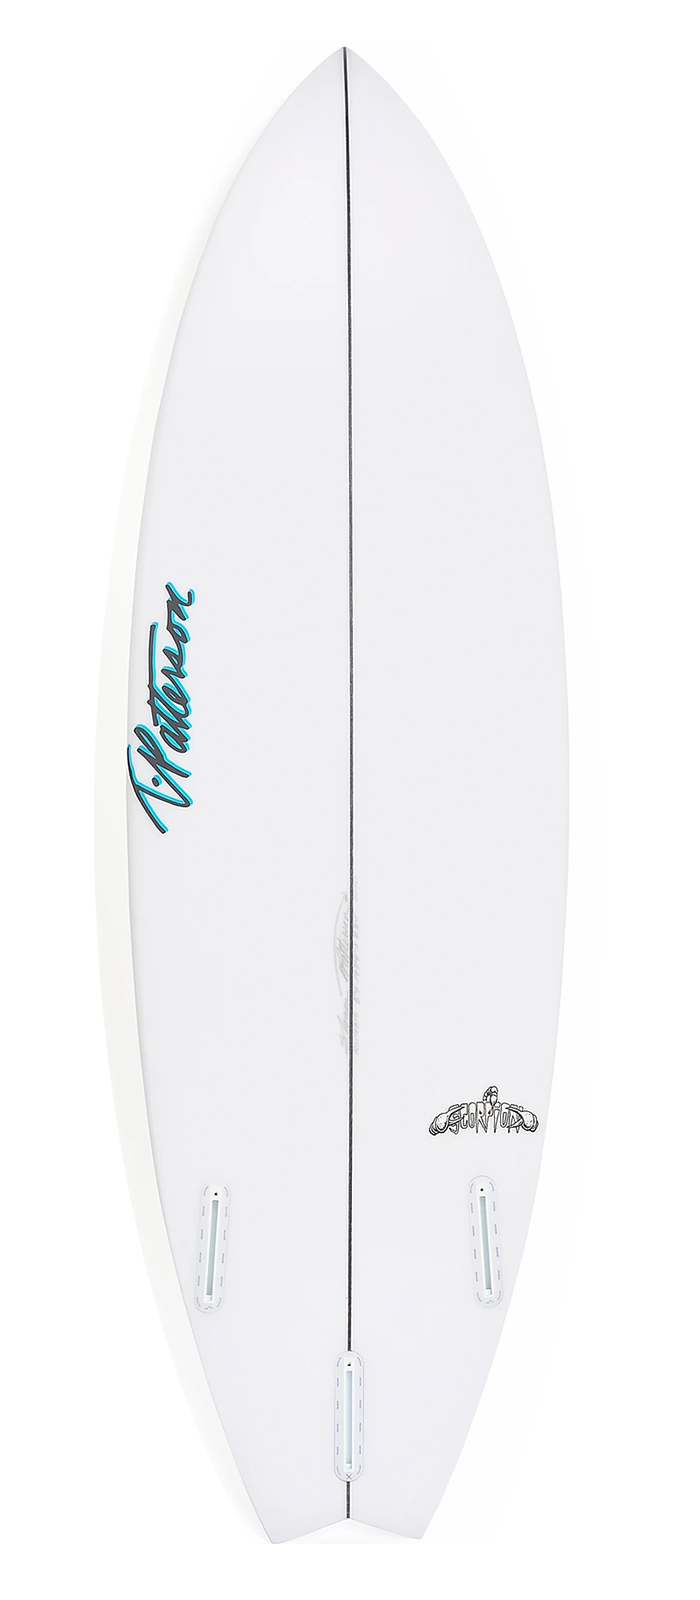 SCORPION surfboard model bottom